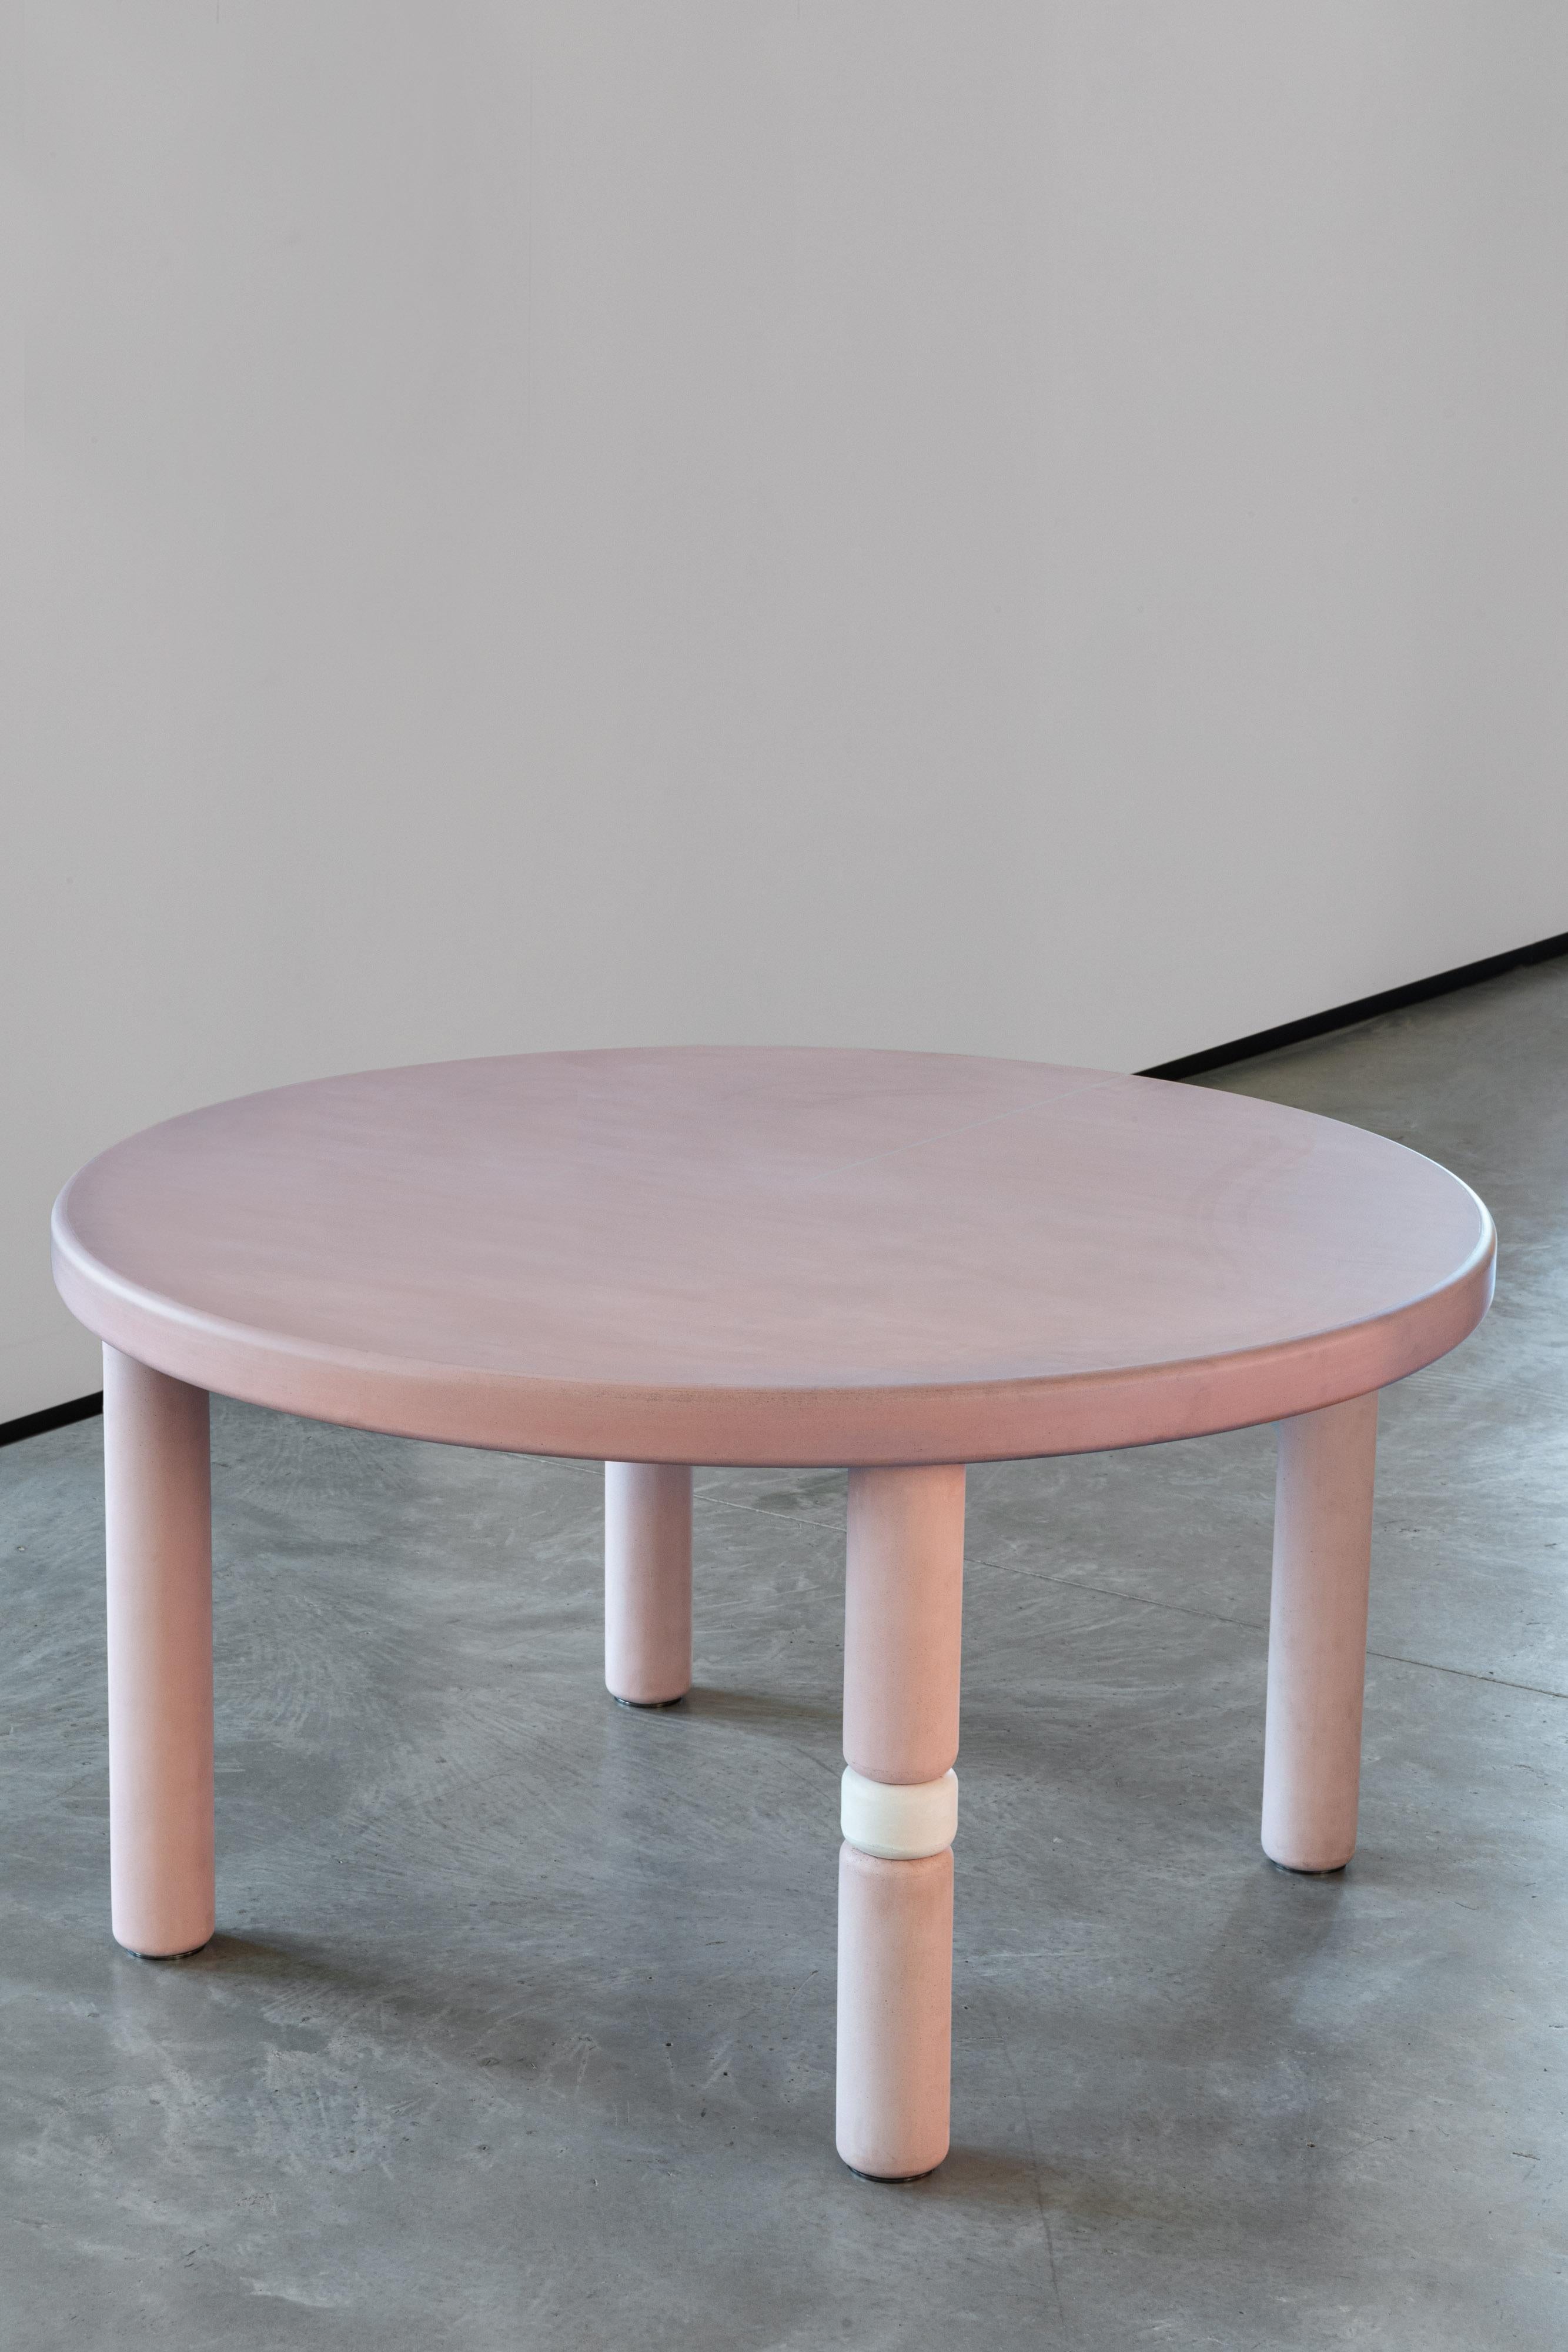 Der runde Flipper-Tisch ist Teil der Flipper-Kollektion, die von Marialaura Irvine entworfen wurde. Spiel, Farbe und Freiheit sind die Schlüsselwörter dieser neuen Kollektion, die auf dem Prinzip 